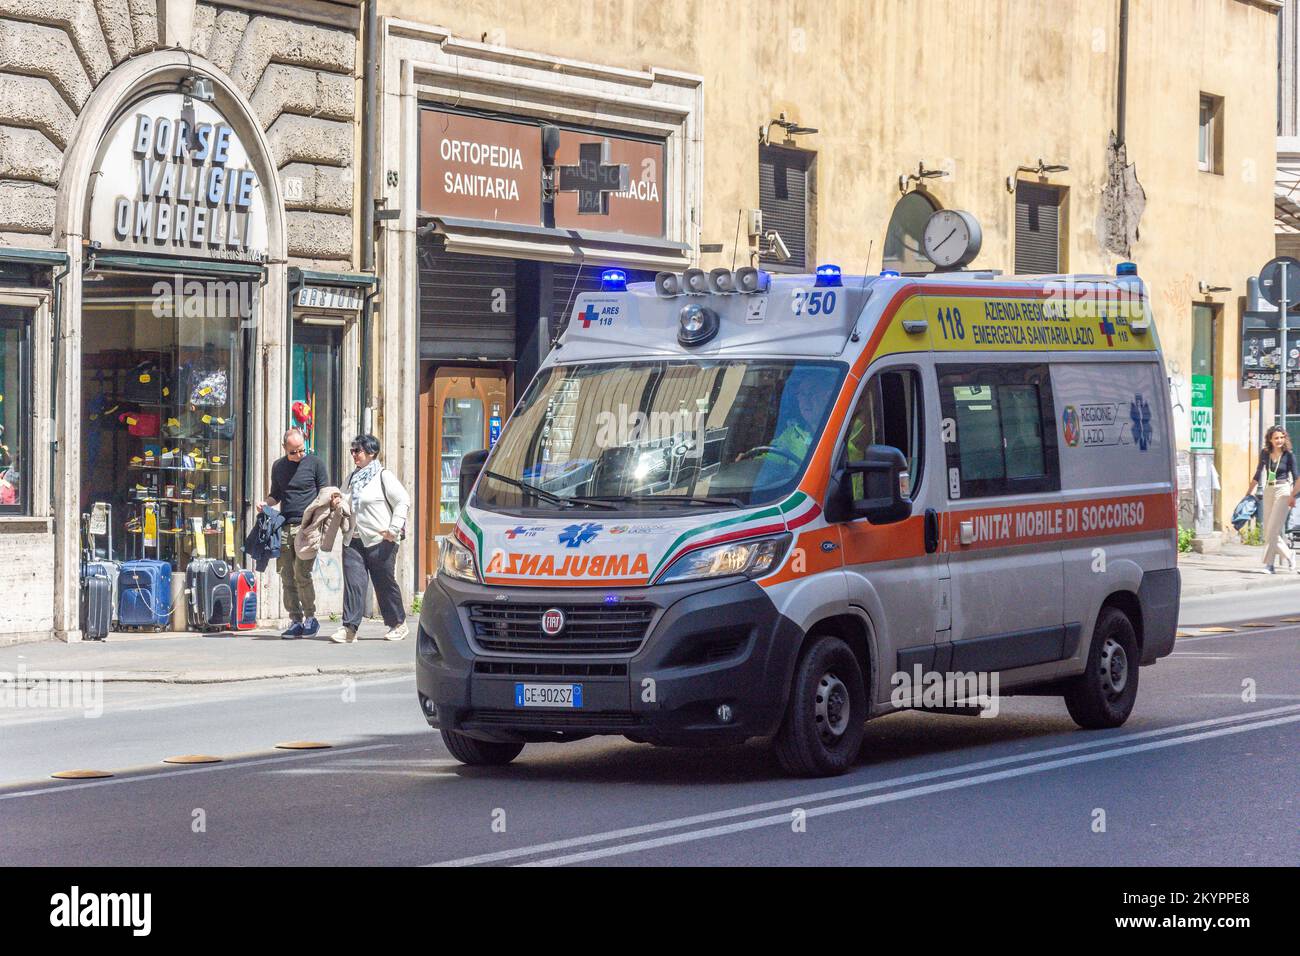 Ambulance on call, Corso Vittorio Emanuele II, Central Rome, Rome (Roma), Lazio Region, Italy Stock Photo